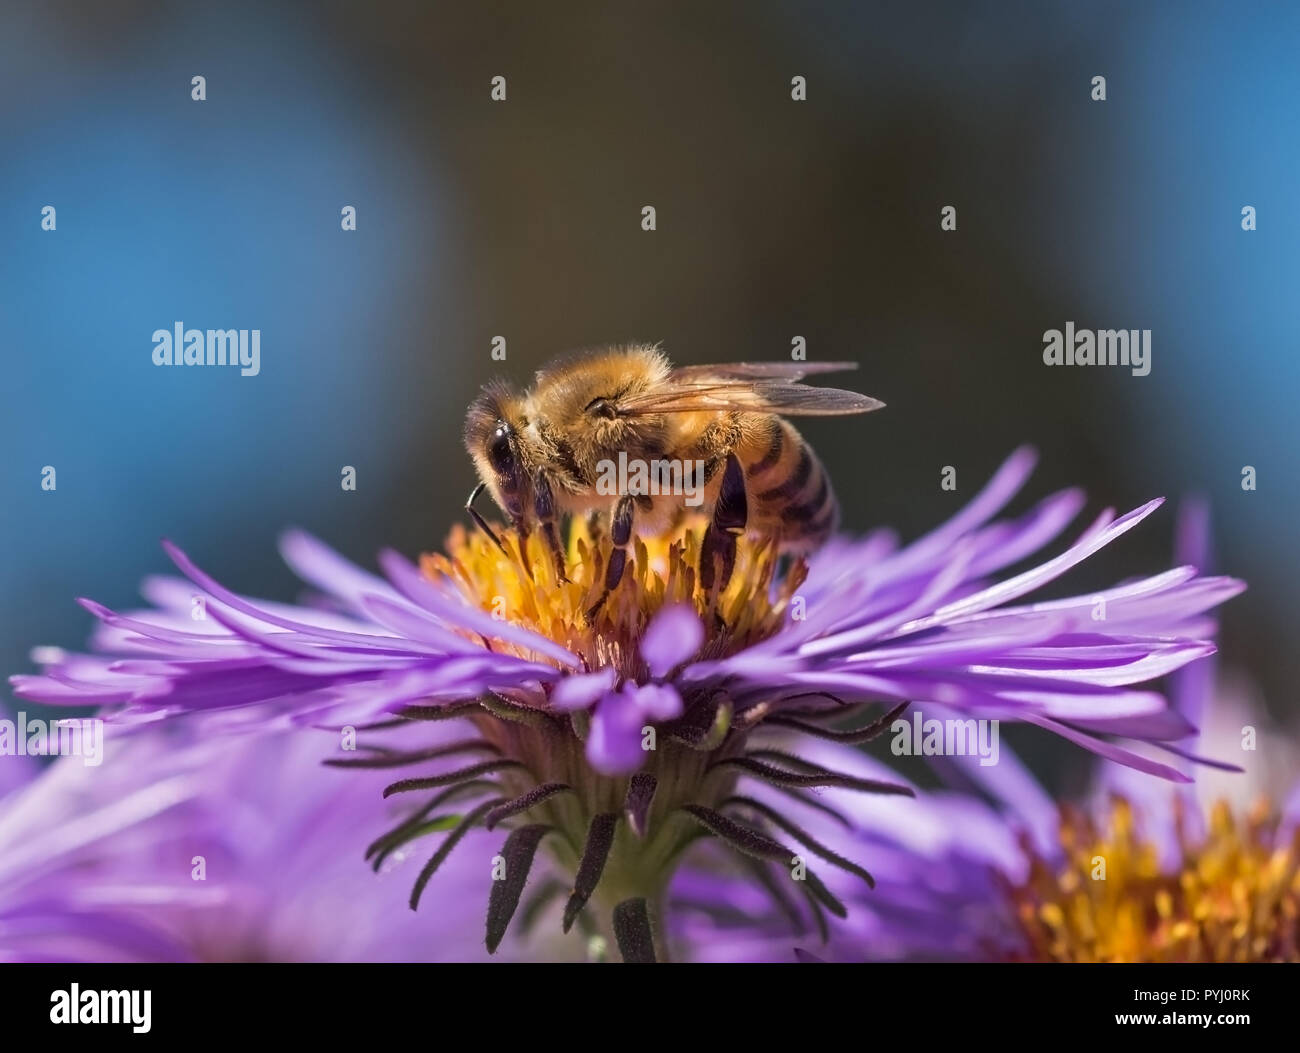 Abeille domestique (Apis mellifera) collecte de nectar et pollen sur un aster mauve sauvage (Asteraceae), vue de profil. Banque D'Images